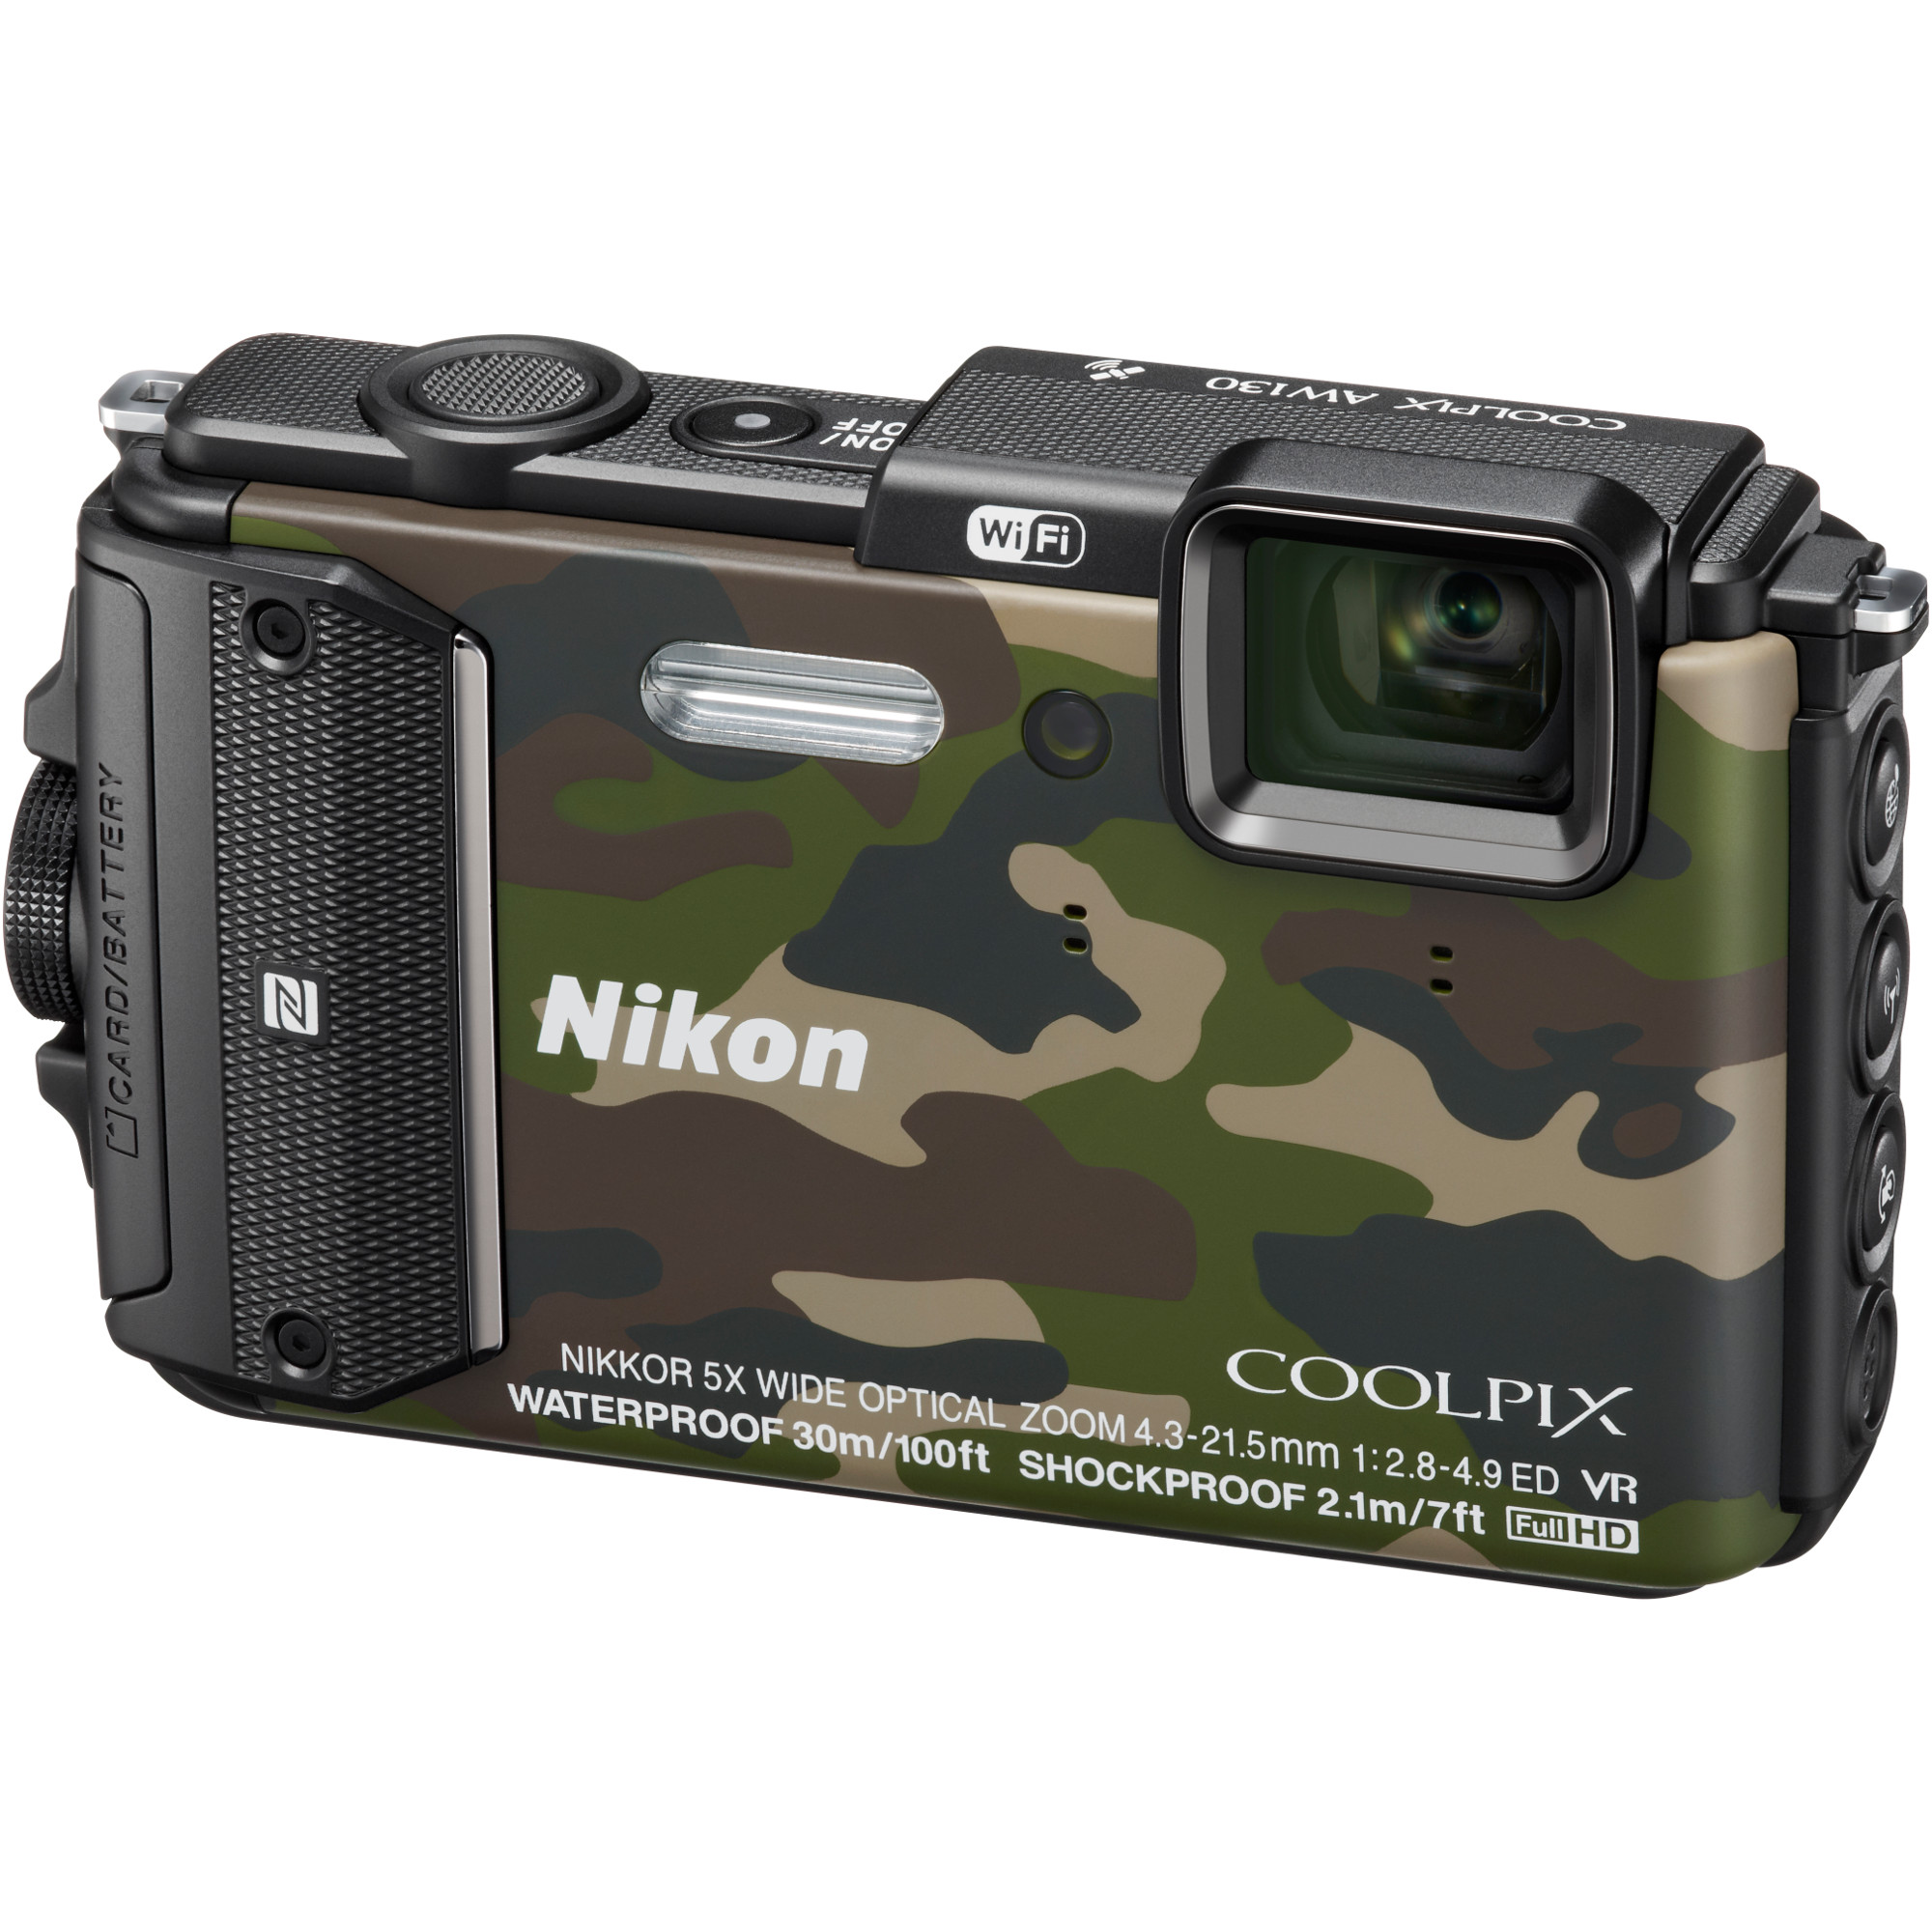  Aparat foto digital Nikon Coolpix Waterproof AW130, Outdoor Kit, Card 16GB, Camuflaj 